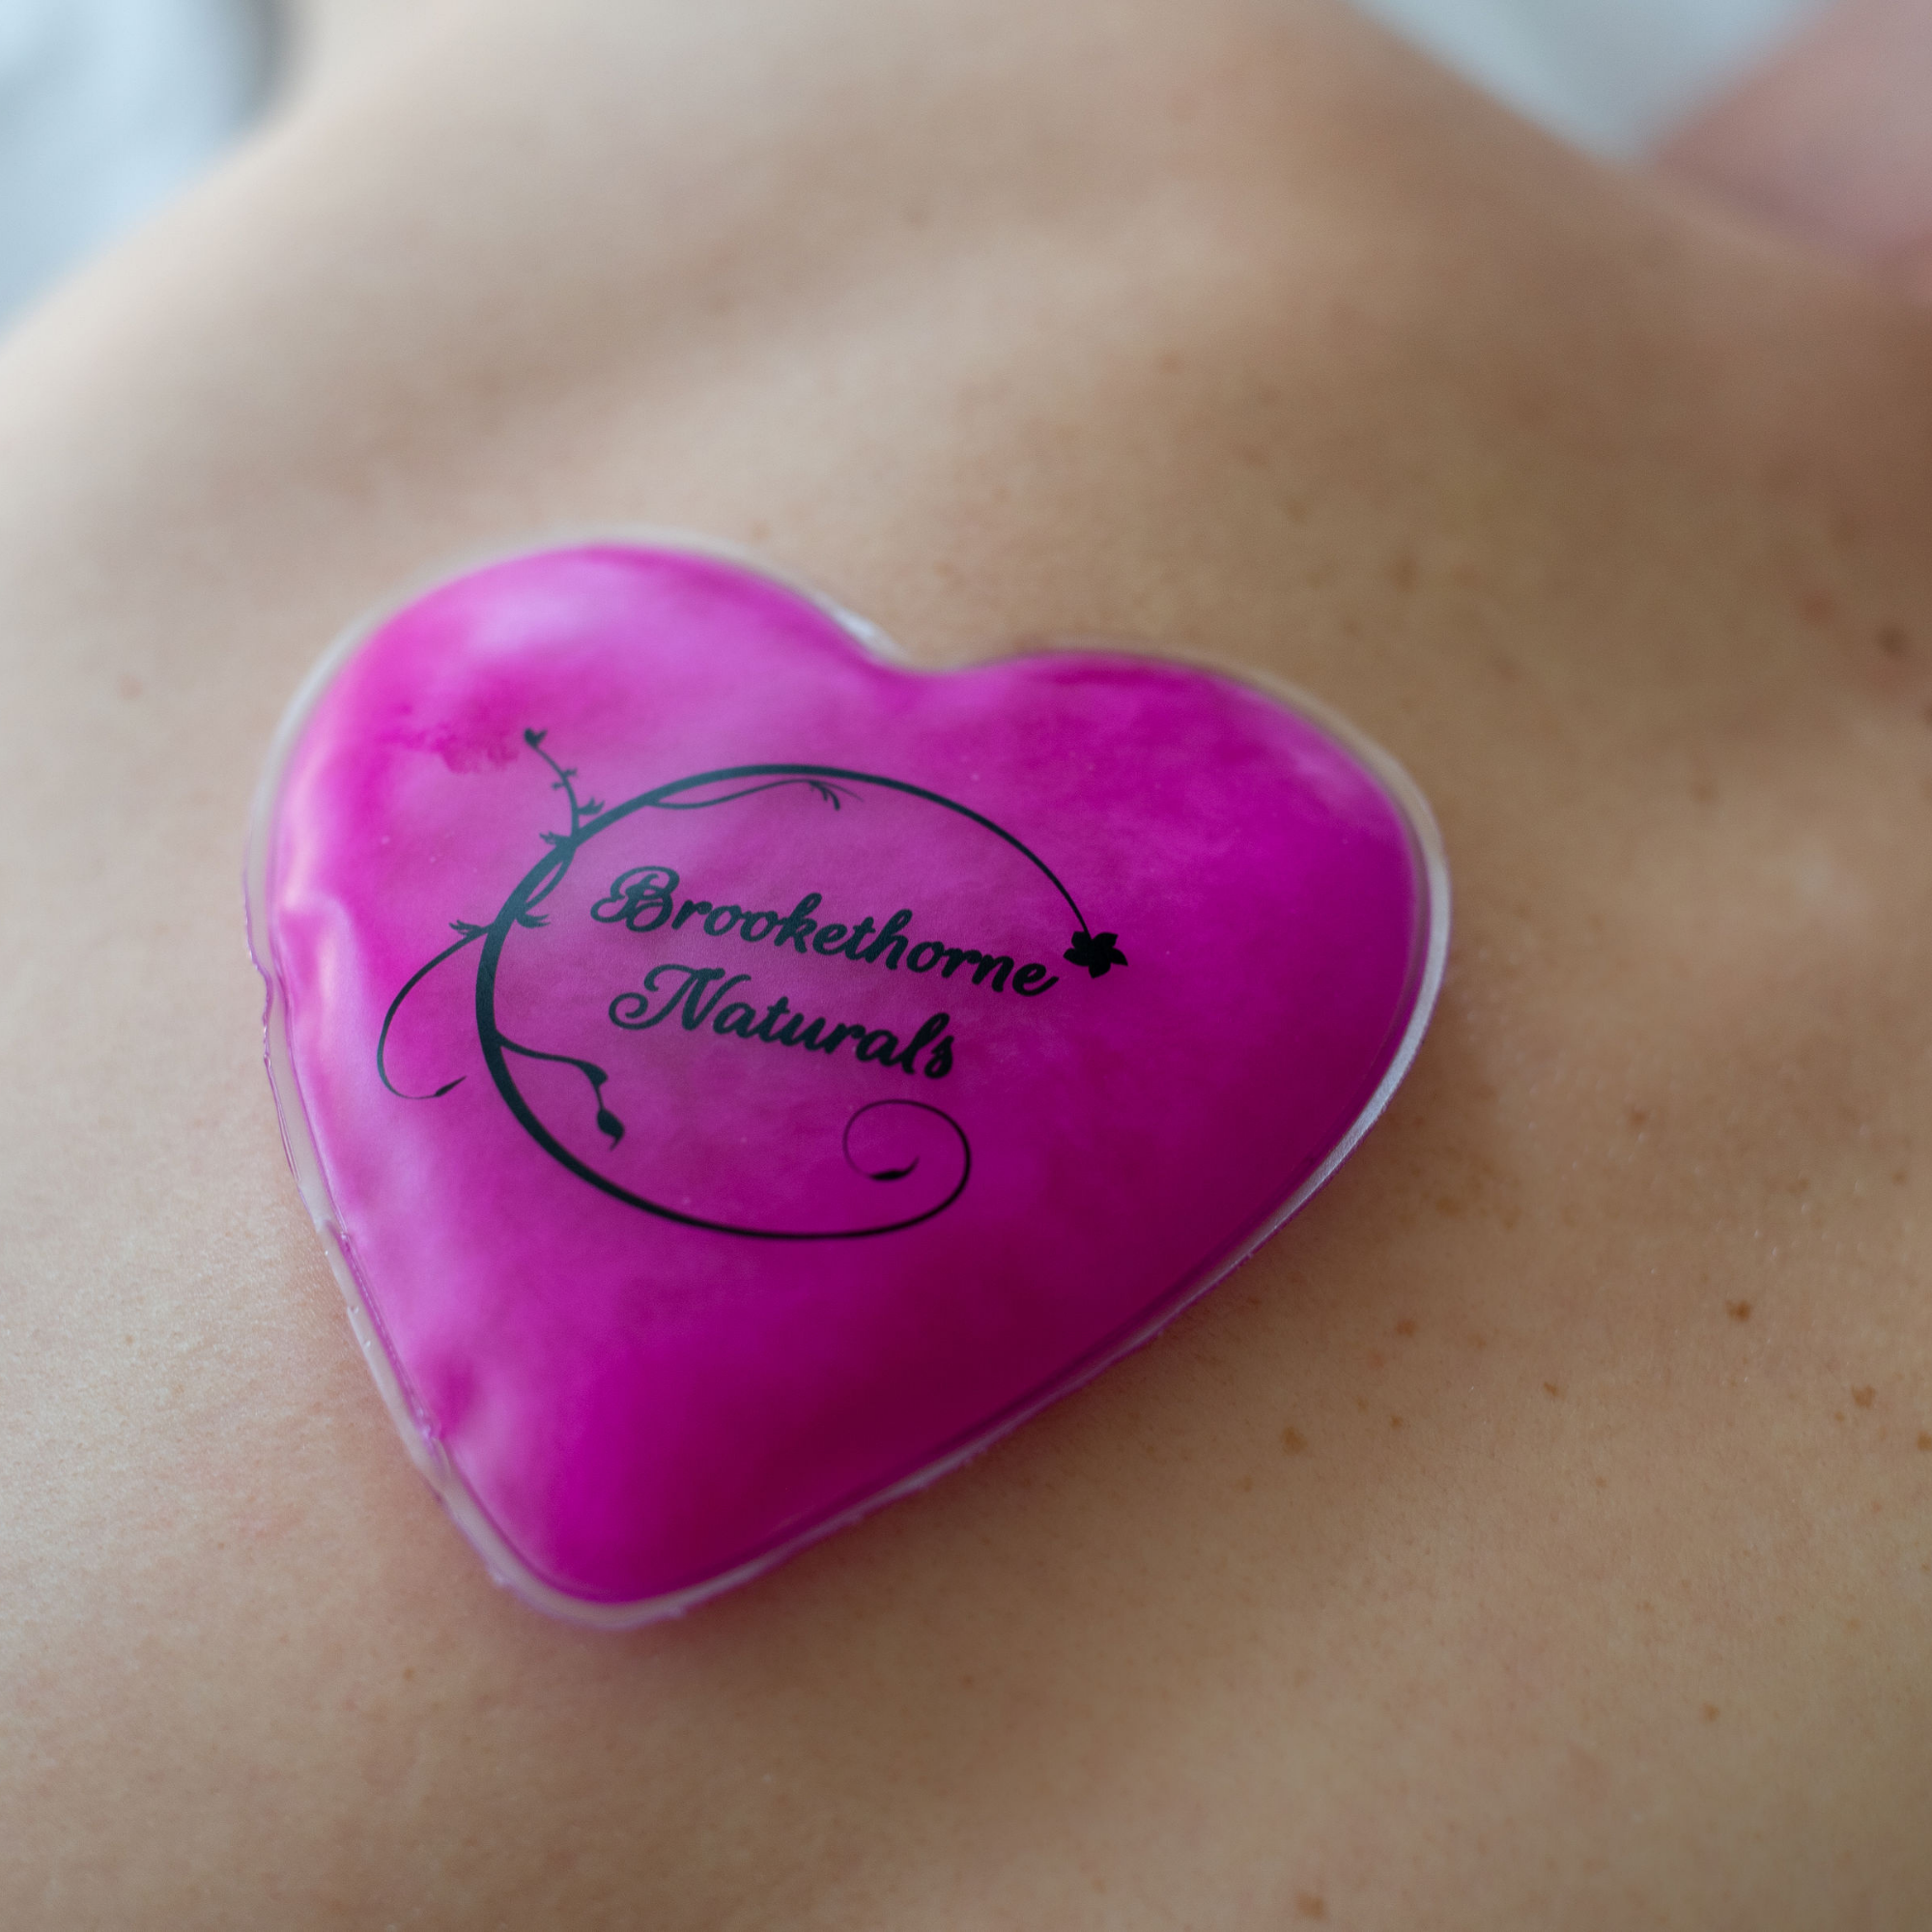 Heart Massager - Sensual Heat Massager from Pure Romance